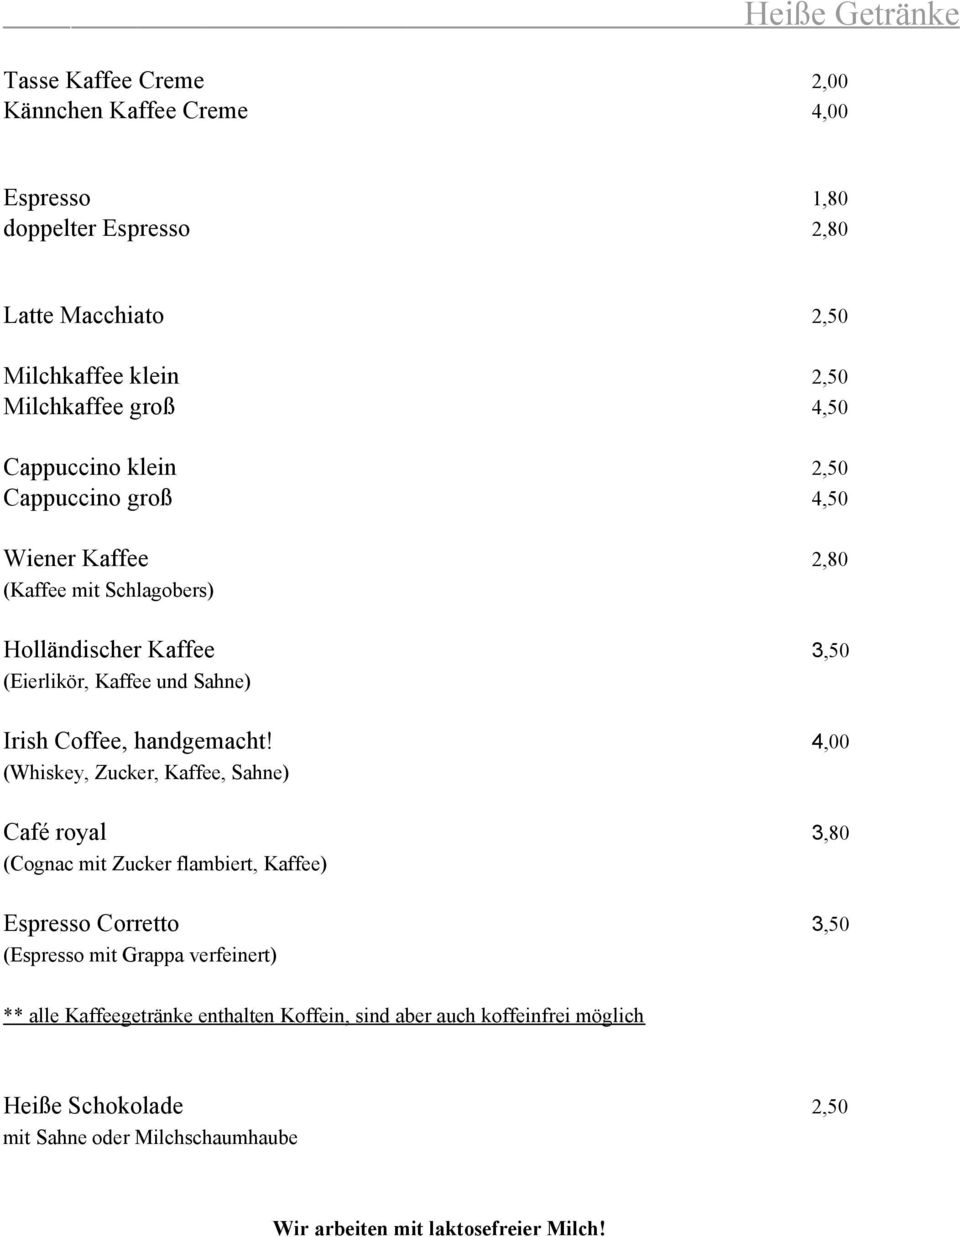 .. 3,50 (Eierlikör, Kaffee und Sahne)... Irish Coffee, handgemacht! 4,00 (Whiskey, Zucker, Kaffee, Sahne) Café royal.